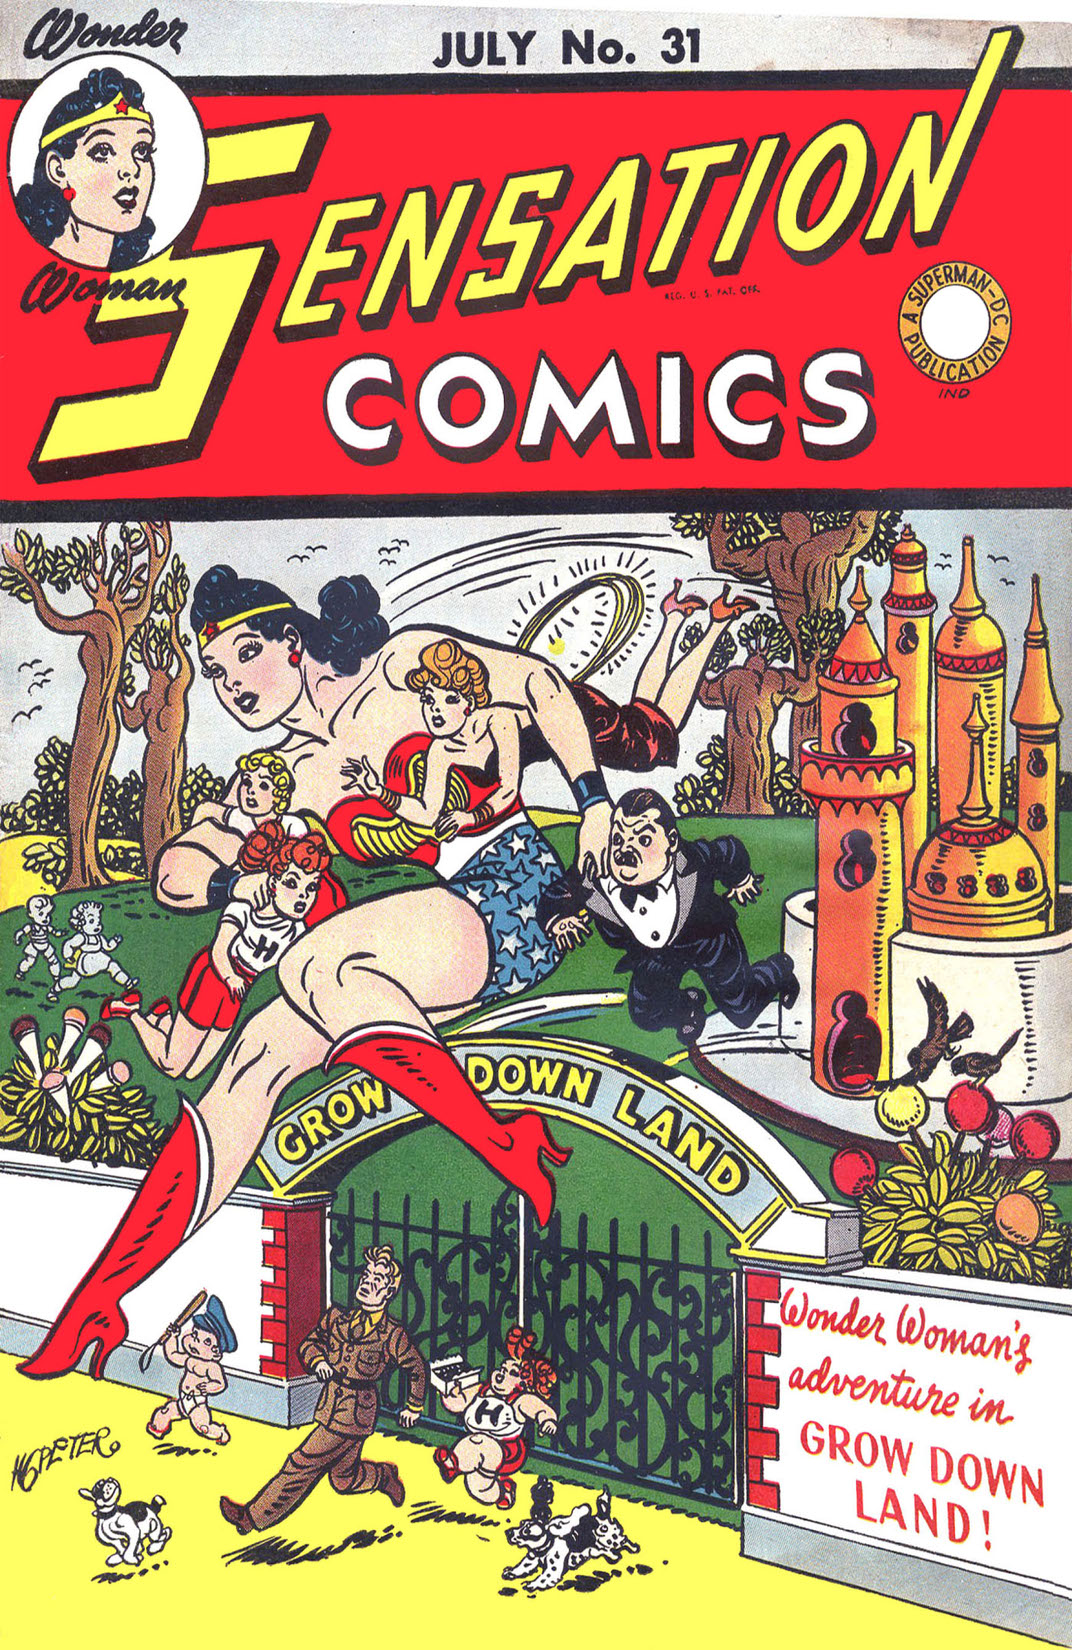 Sensation Comics #31 preview images